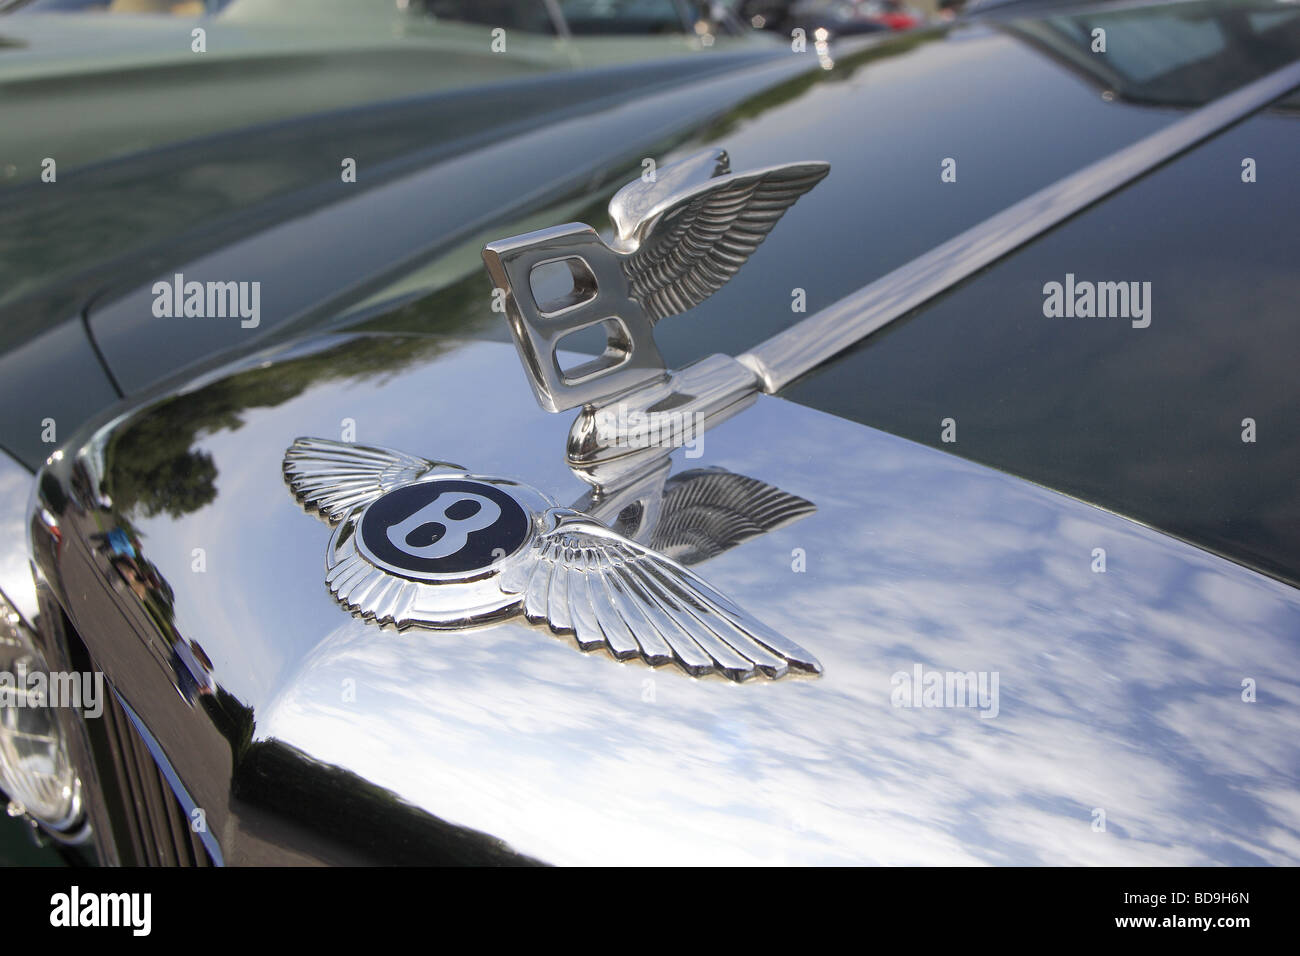 84 photos et images de Bentley Emblem - Getty Images